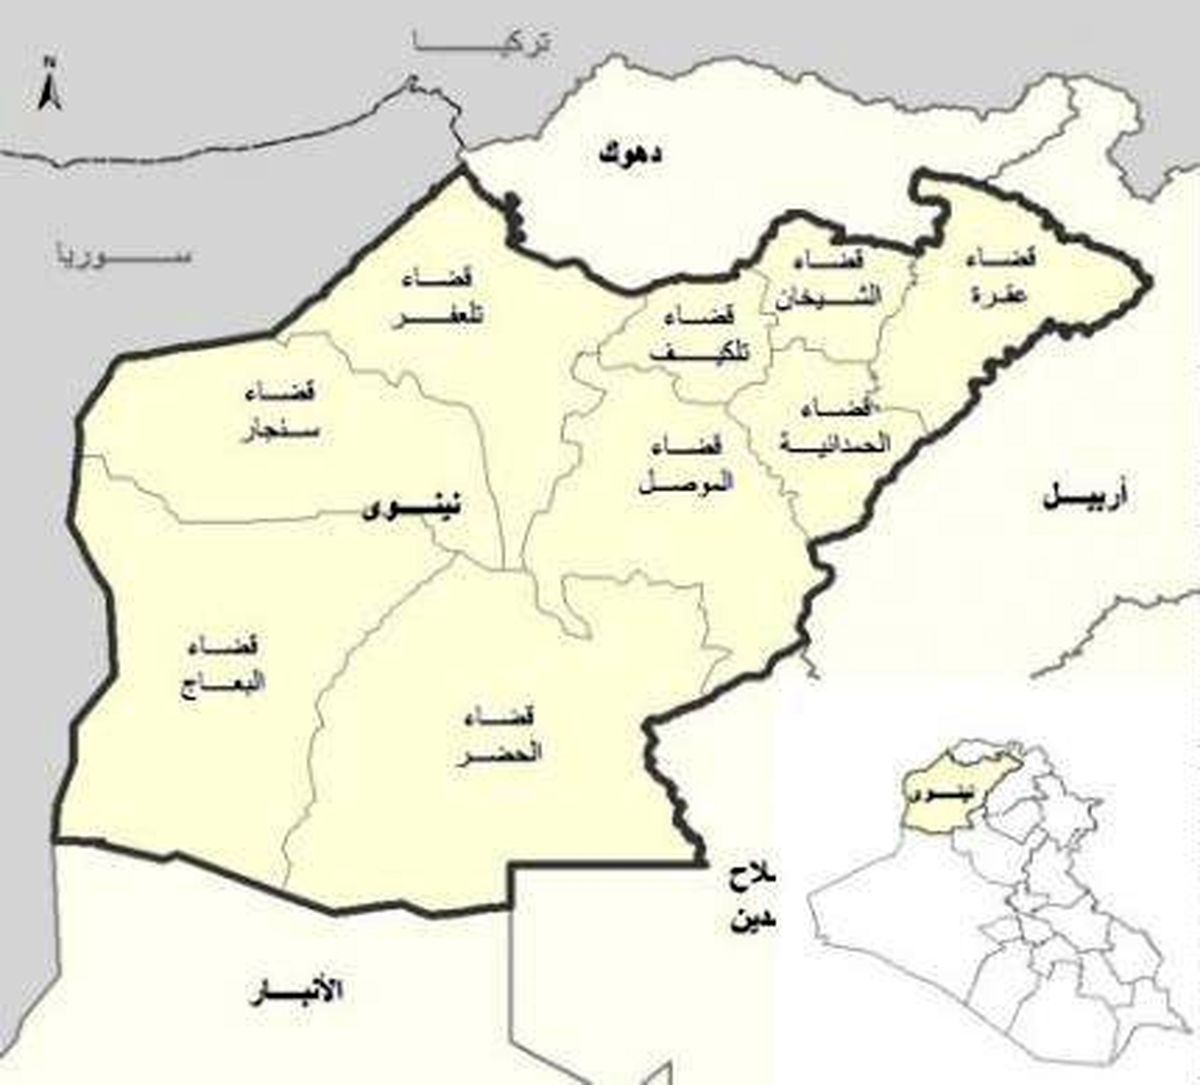 پارلمان عراق هرگونه تغییر در مرزهای "نینوا" را ممنوع کرد